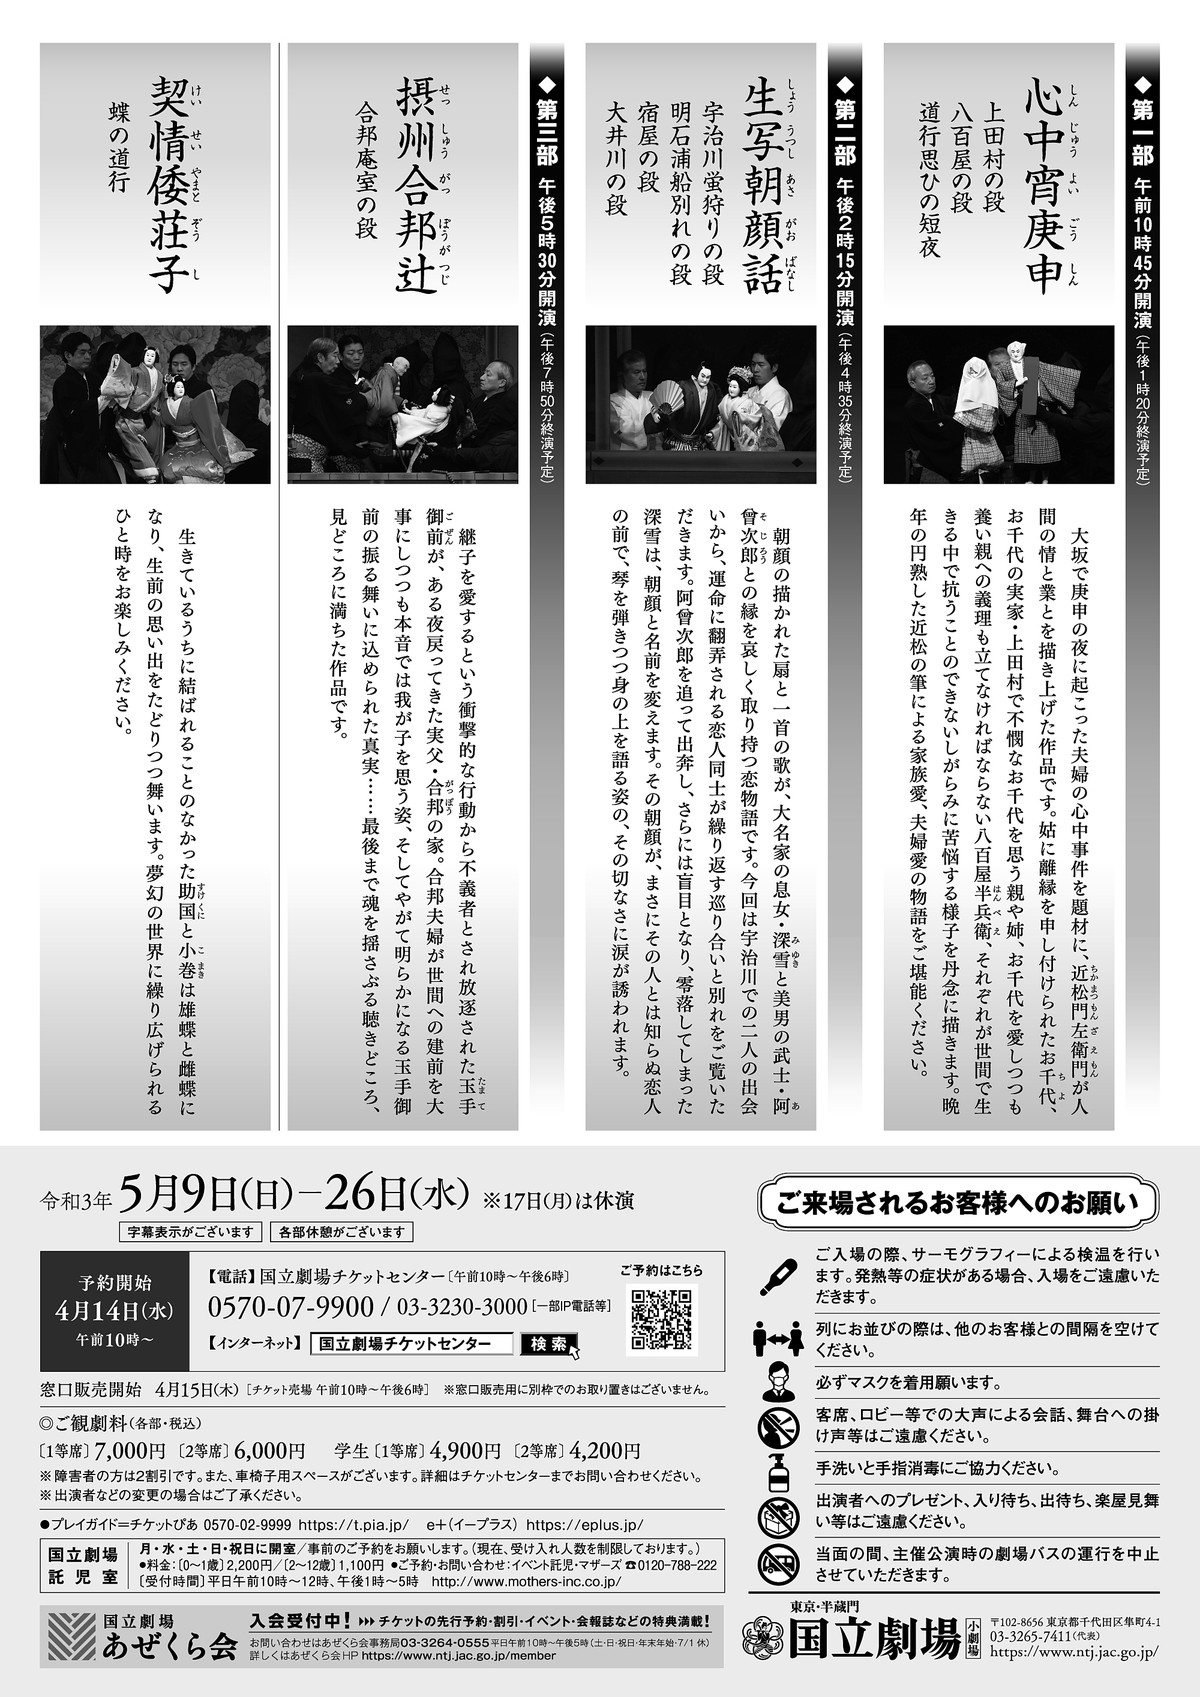 国立劇場 令和3年5月文楽公演|【公式】東京都千代田区の観光情報公式